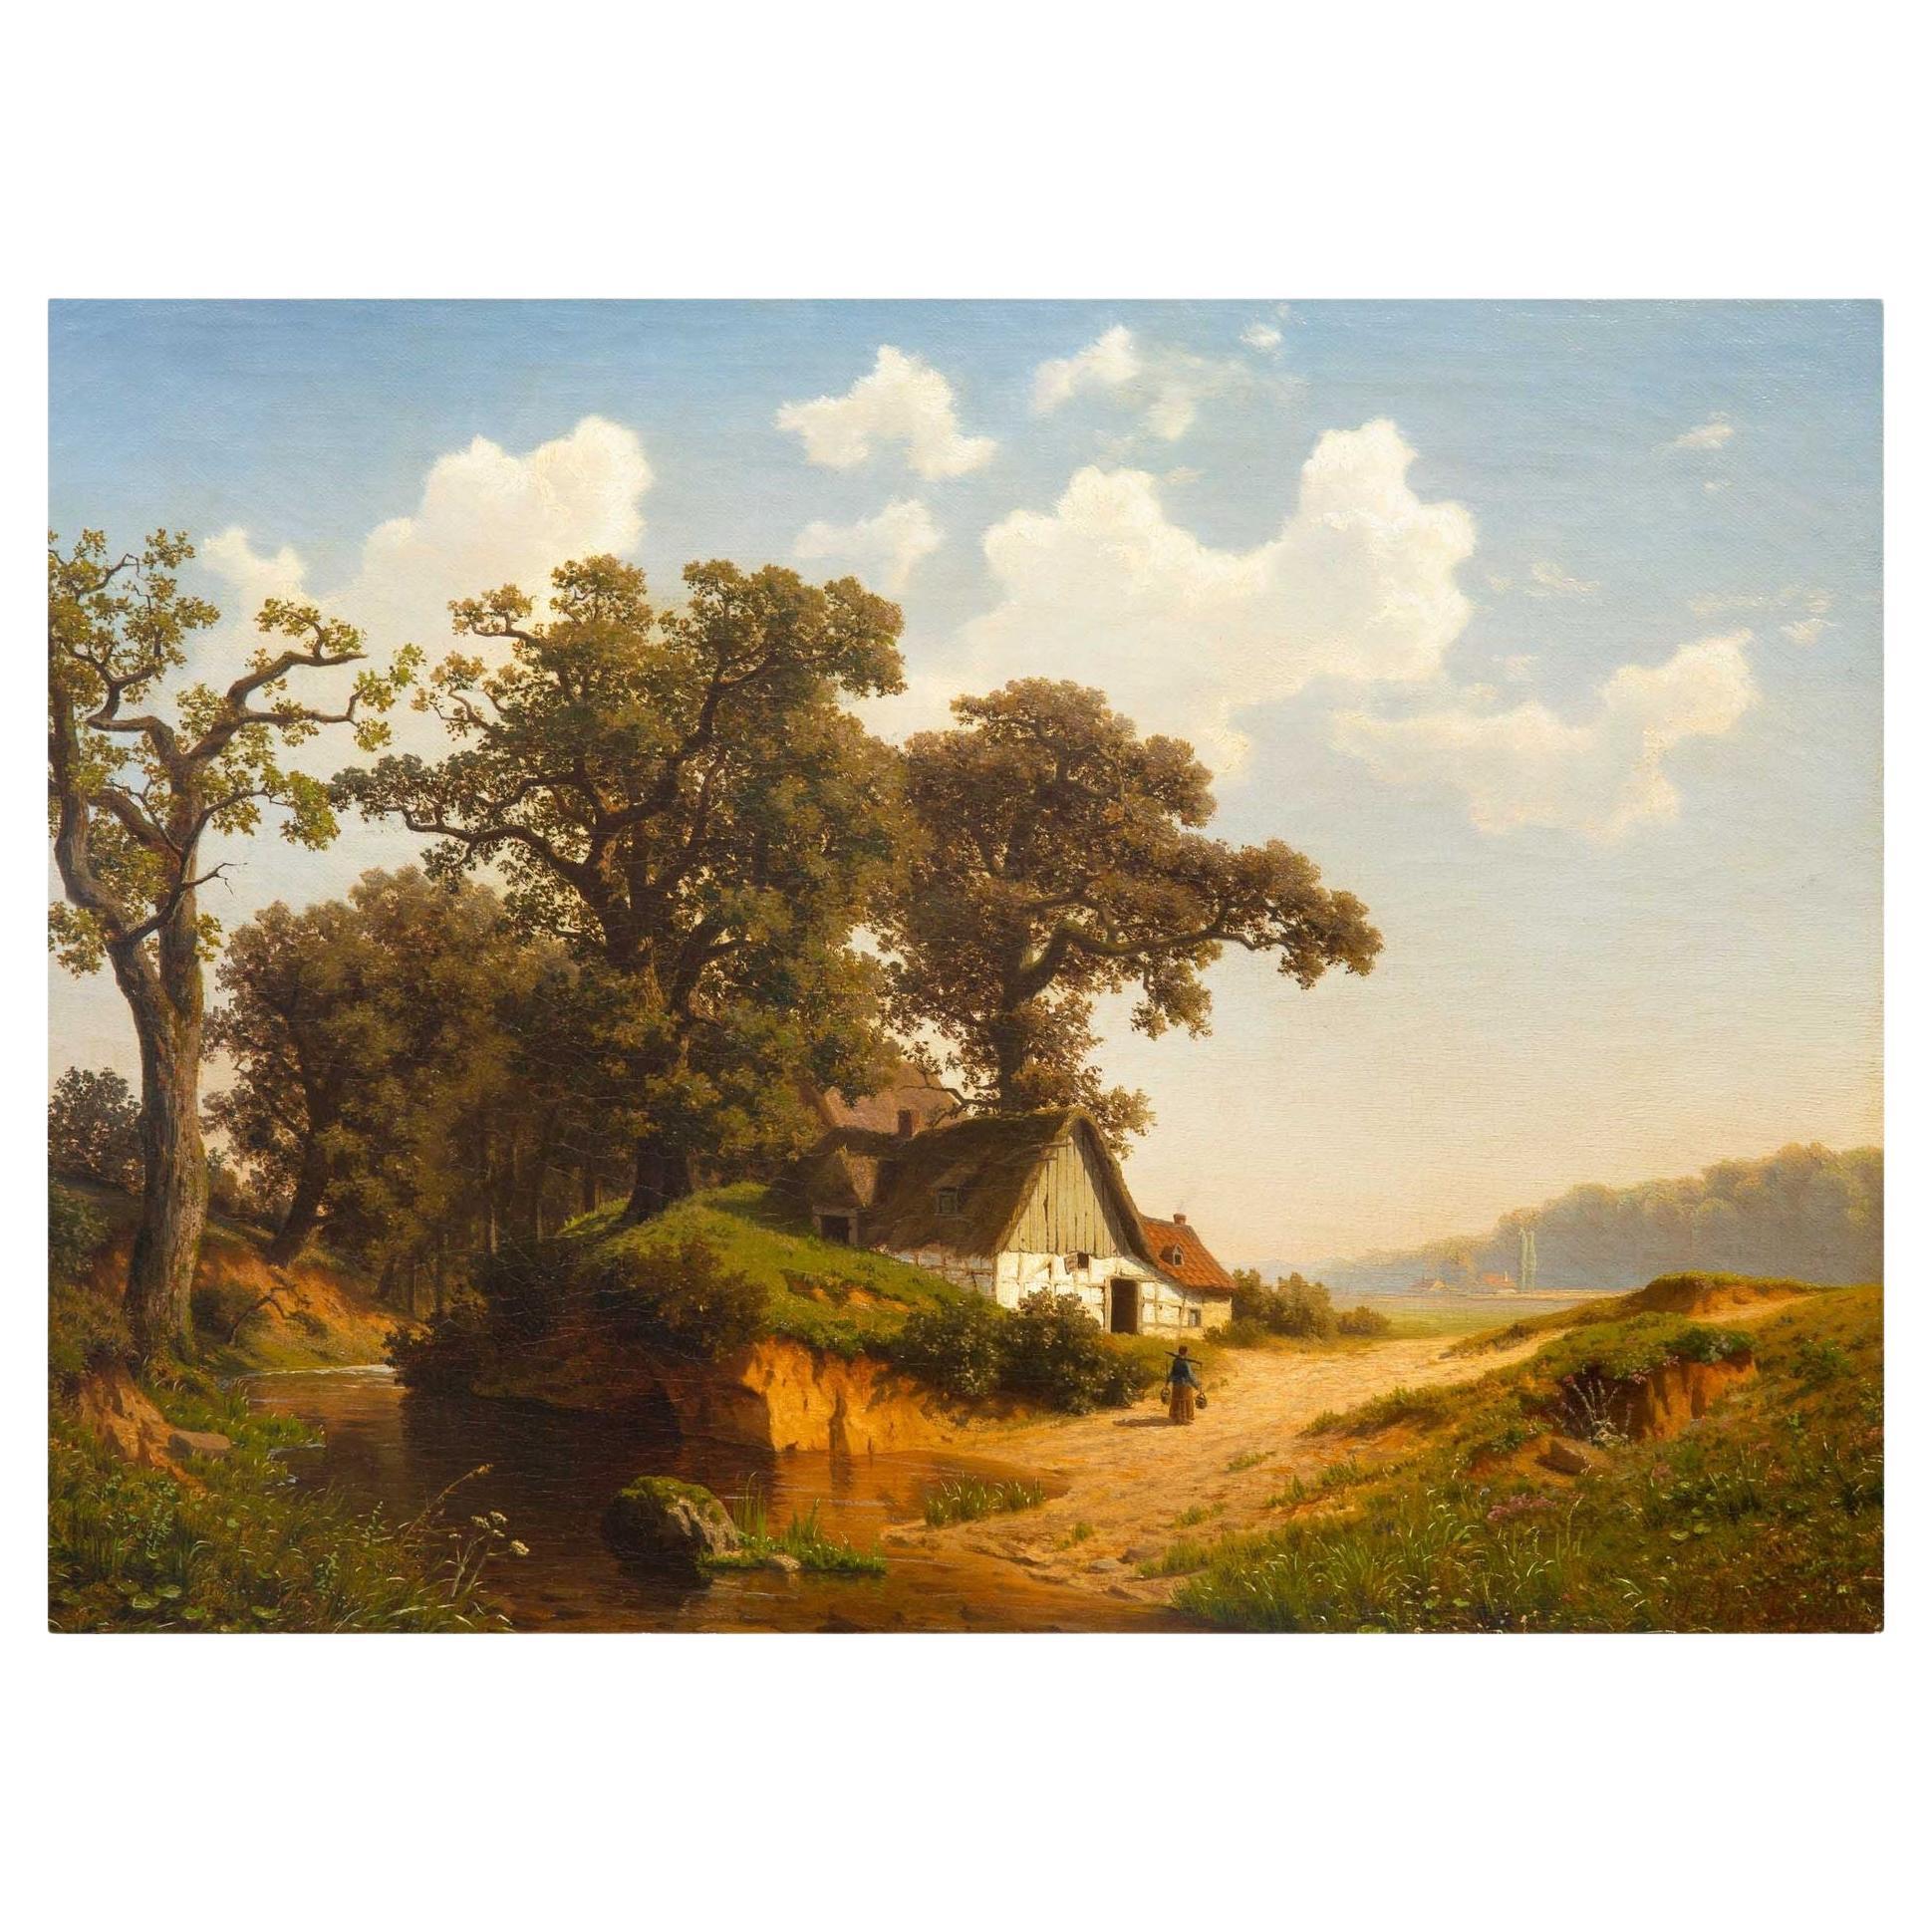 Peinture de paysage allemande de 1884 représentant une ferme hollandaise par Joseph Jansen